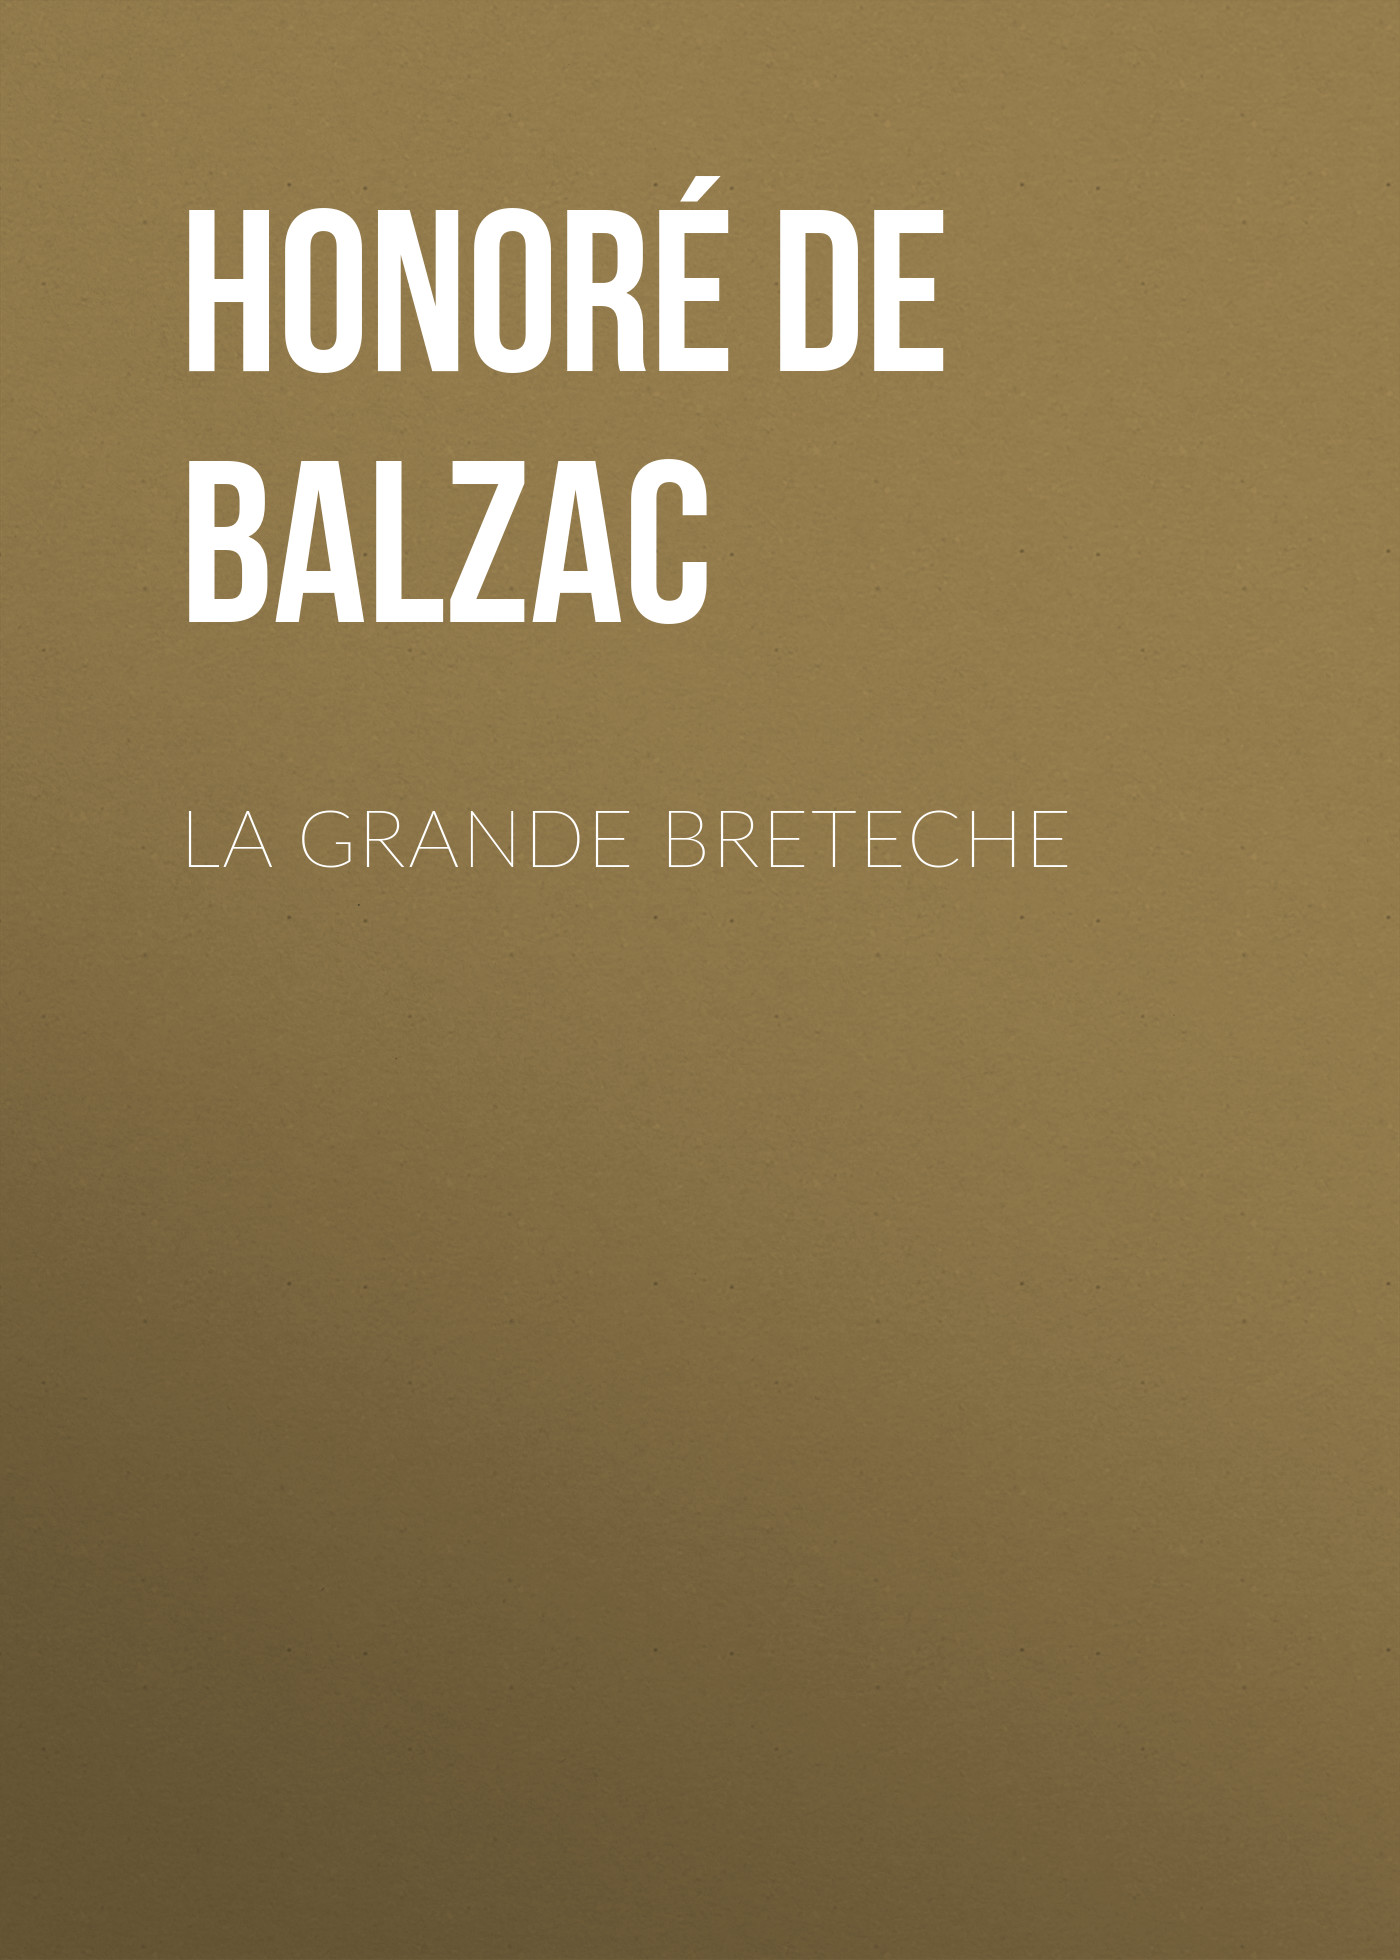 Книга La Grande Breteche из серии , созданная Honoré Balzac, может относится к жанру Литература 19 века, Зарубежная старинная литература, Зарубежная классика. Стоимость электронной книги La Grande Breteche с идентификатором 25020403 составляет 0 руб.